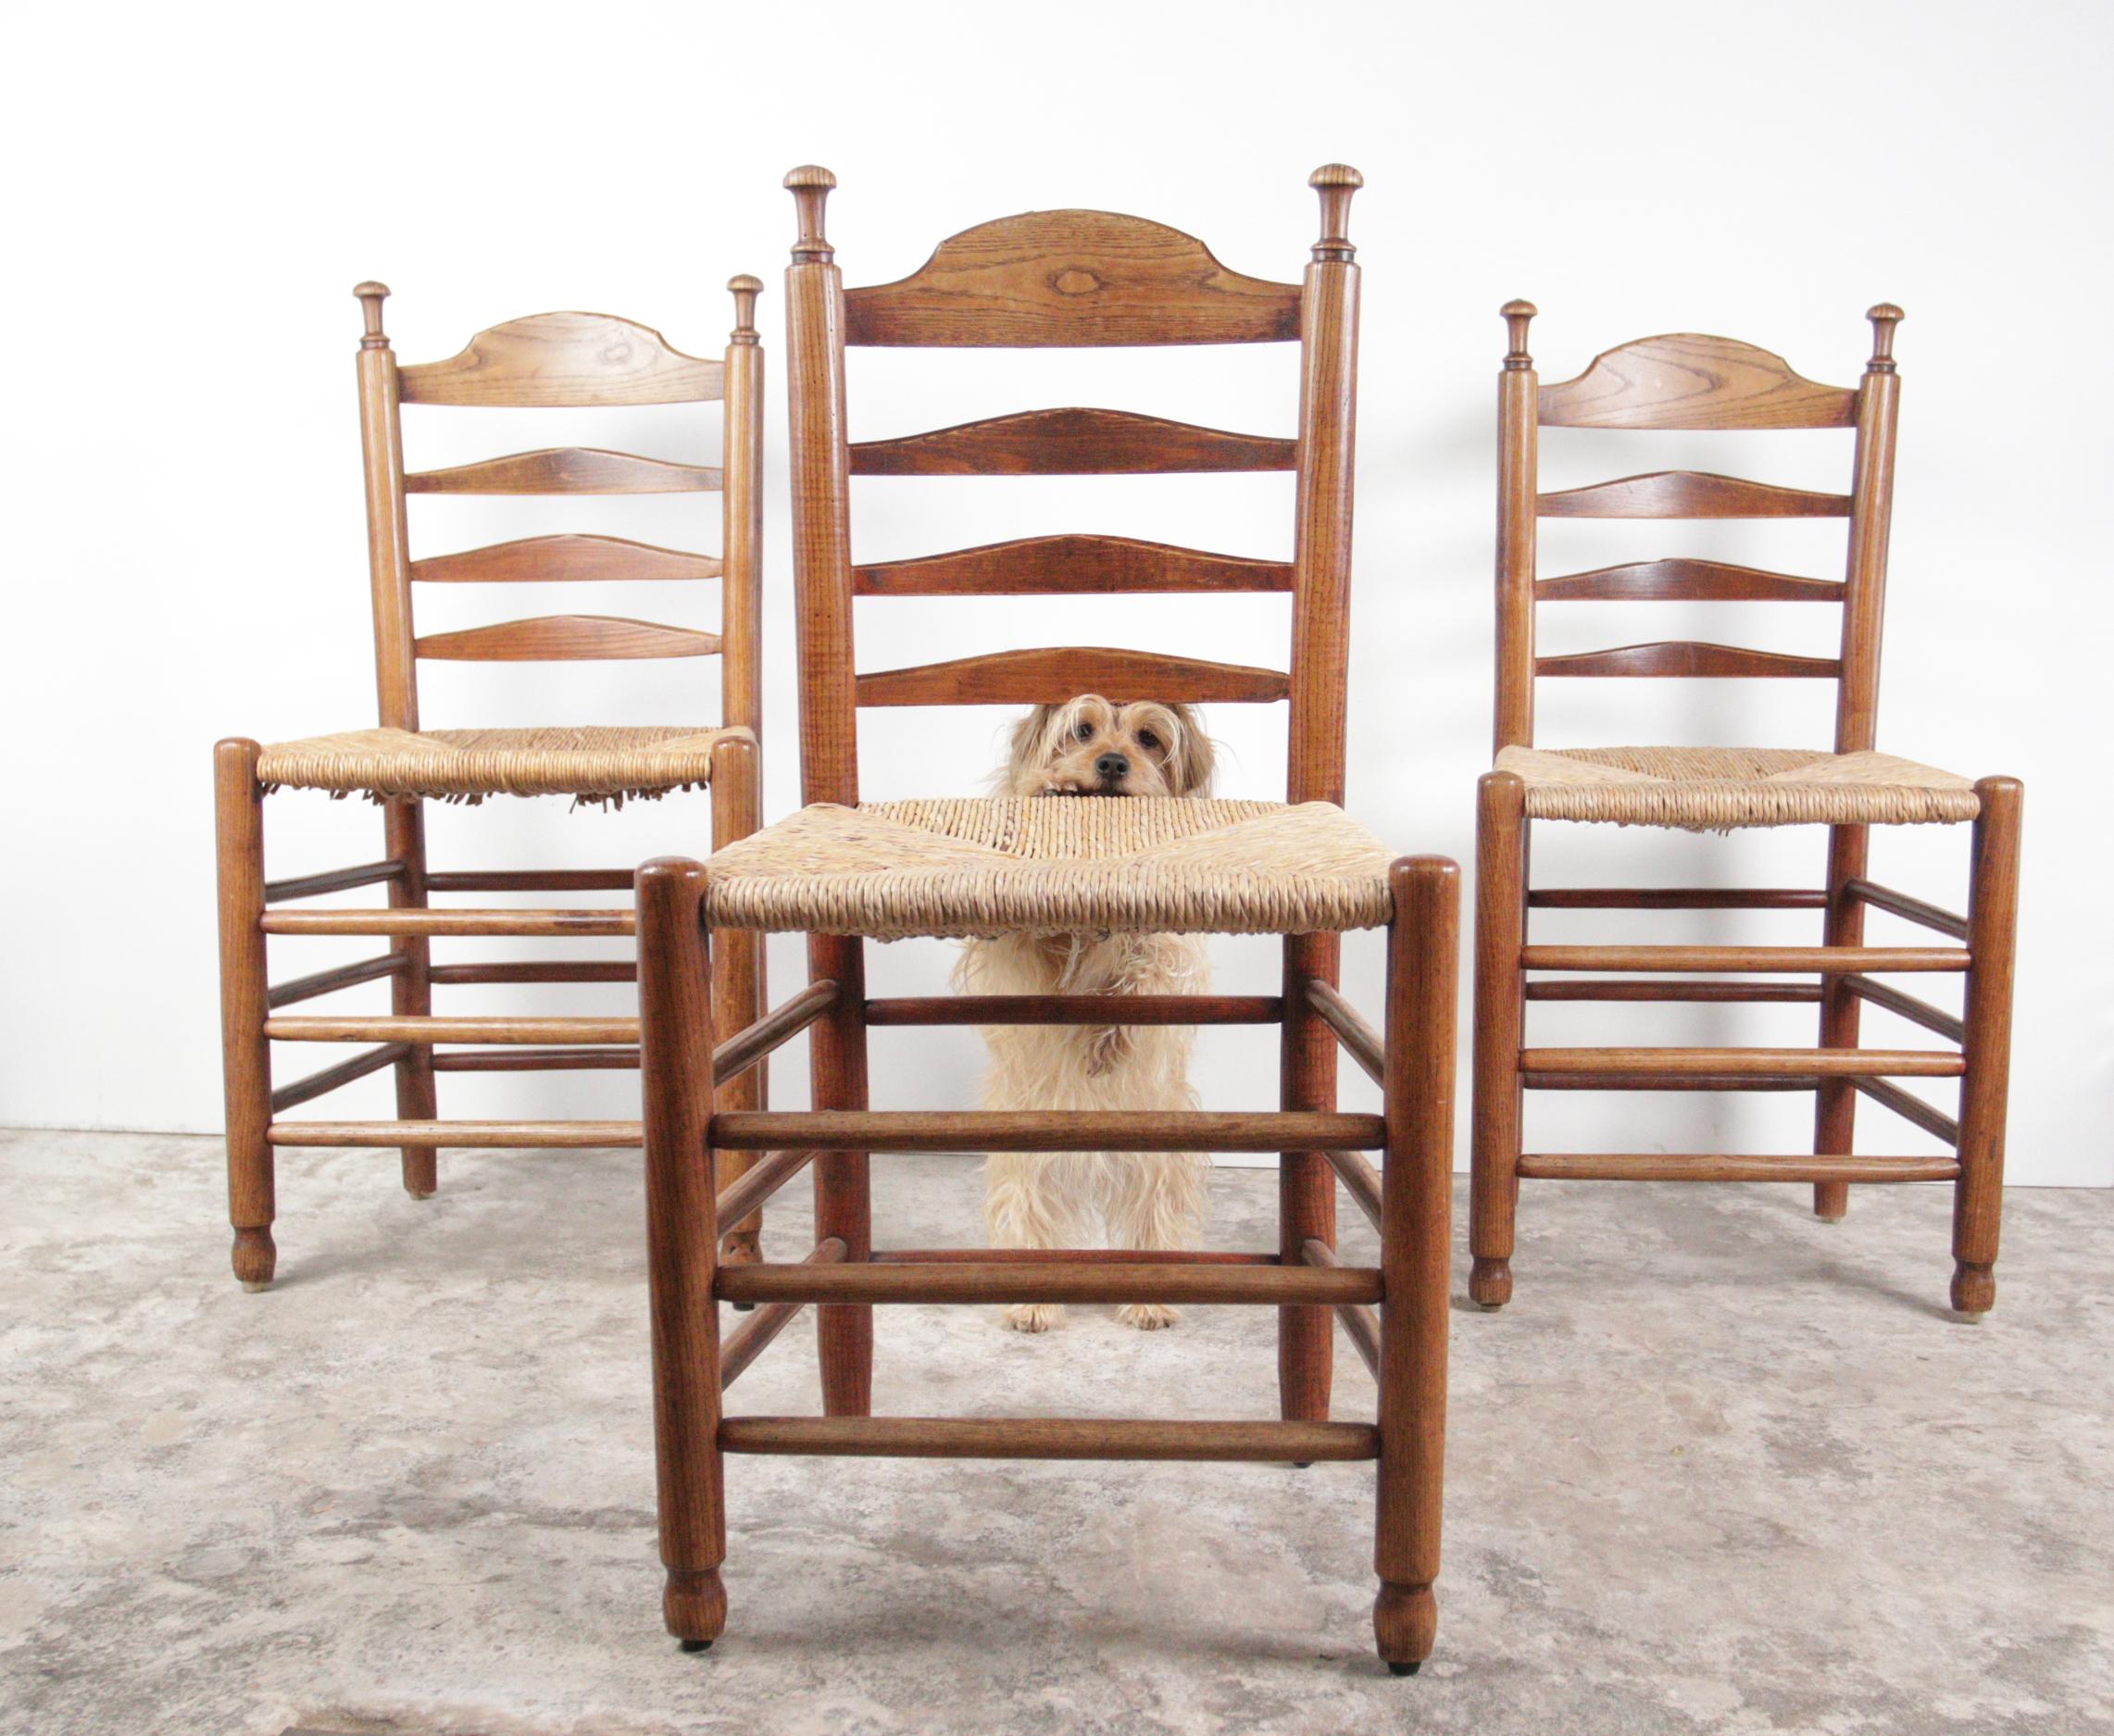 Belles chaises de la fin du 19e siècle en chêne massif avec une assise en osier tressé.
S'inscrivent parfaitement dans le style de designers tels que Charlotte Perriand et Charles Dudouyt.
Ils sont confortables et ont un très bel aspect chaleureux